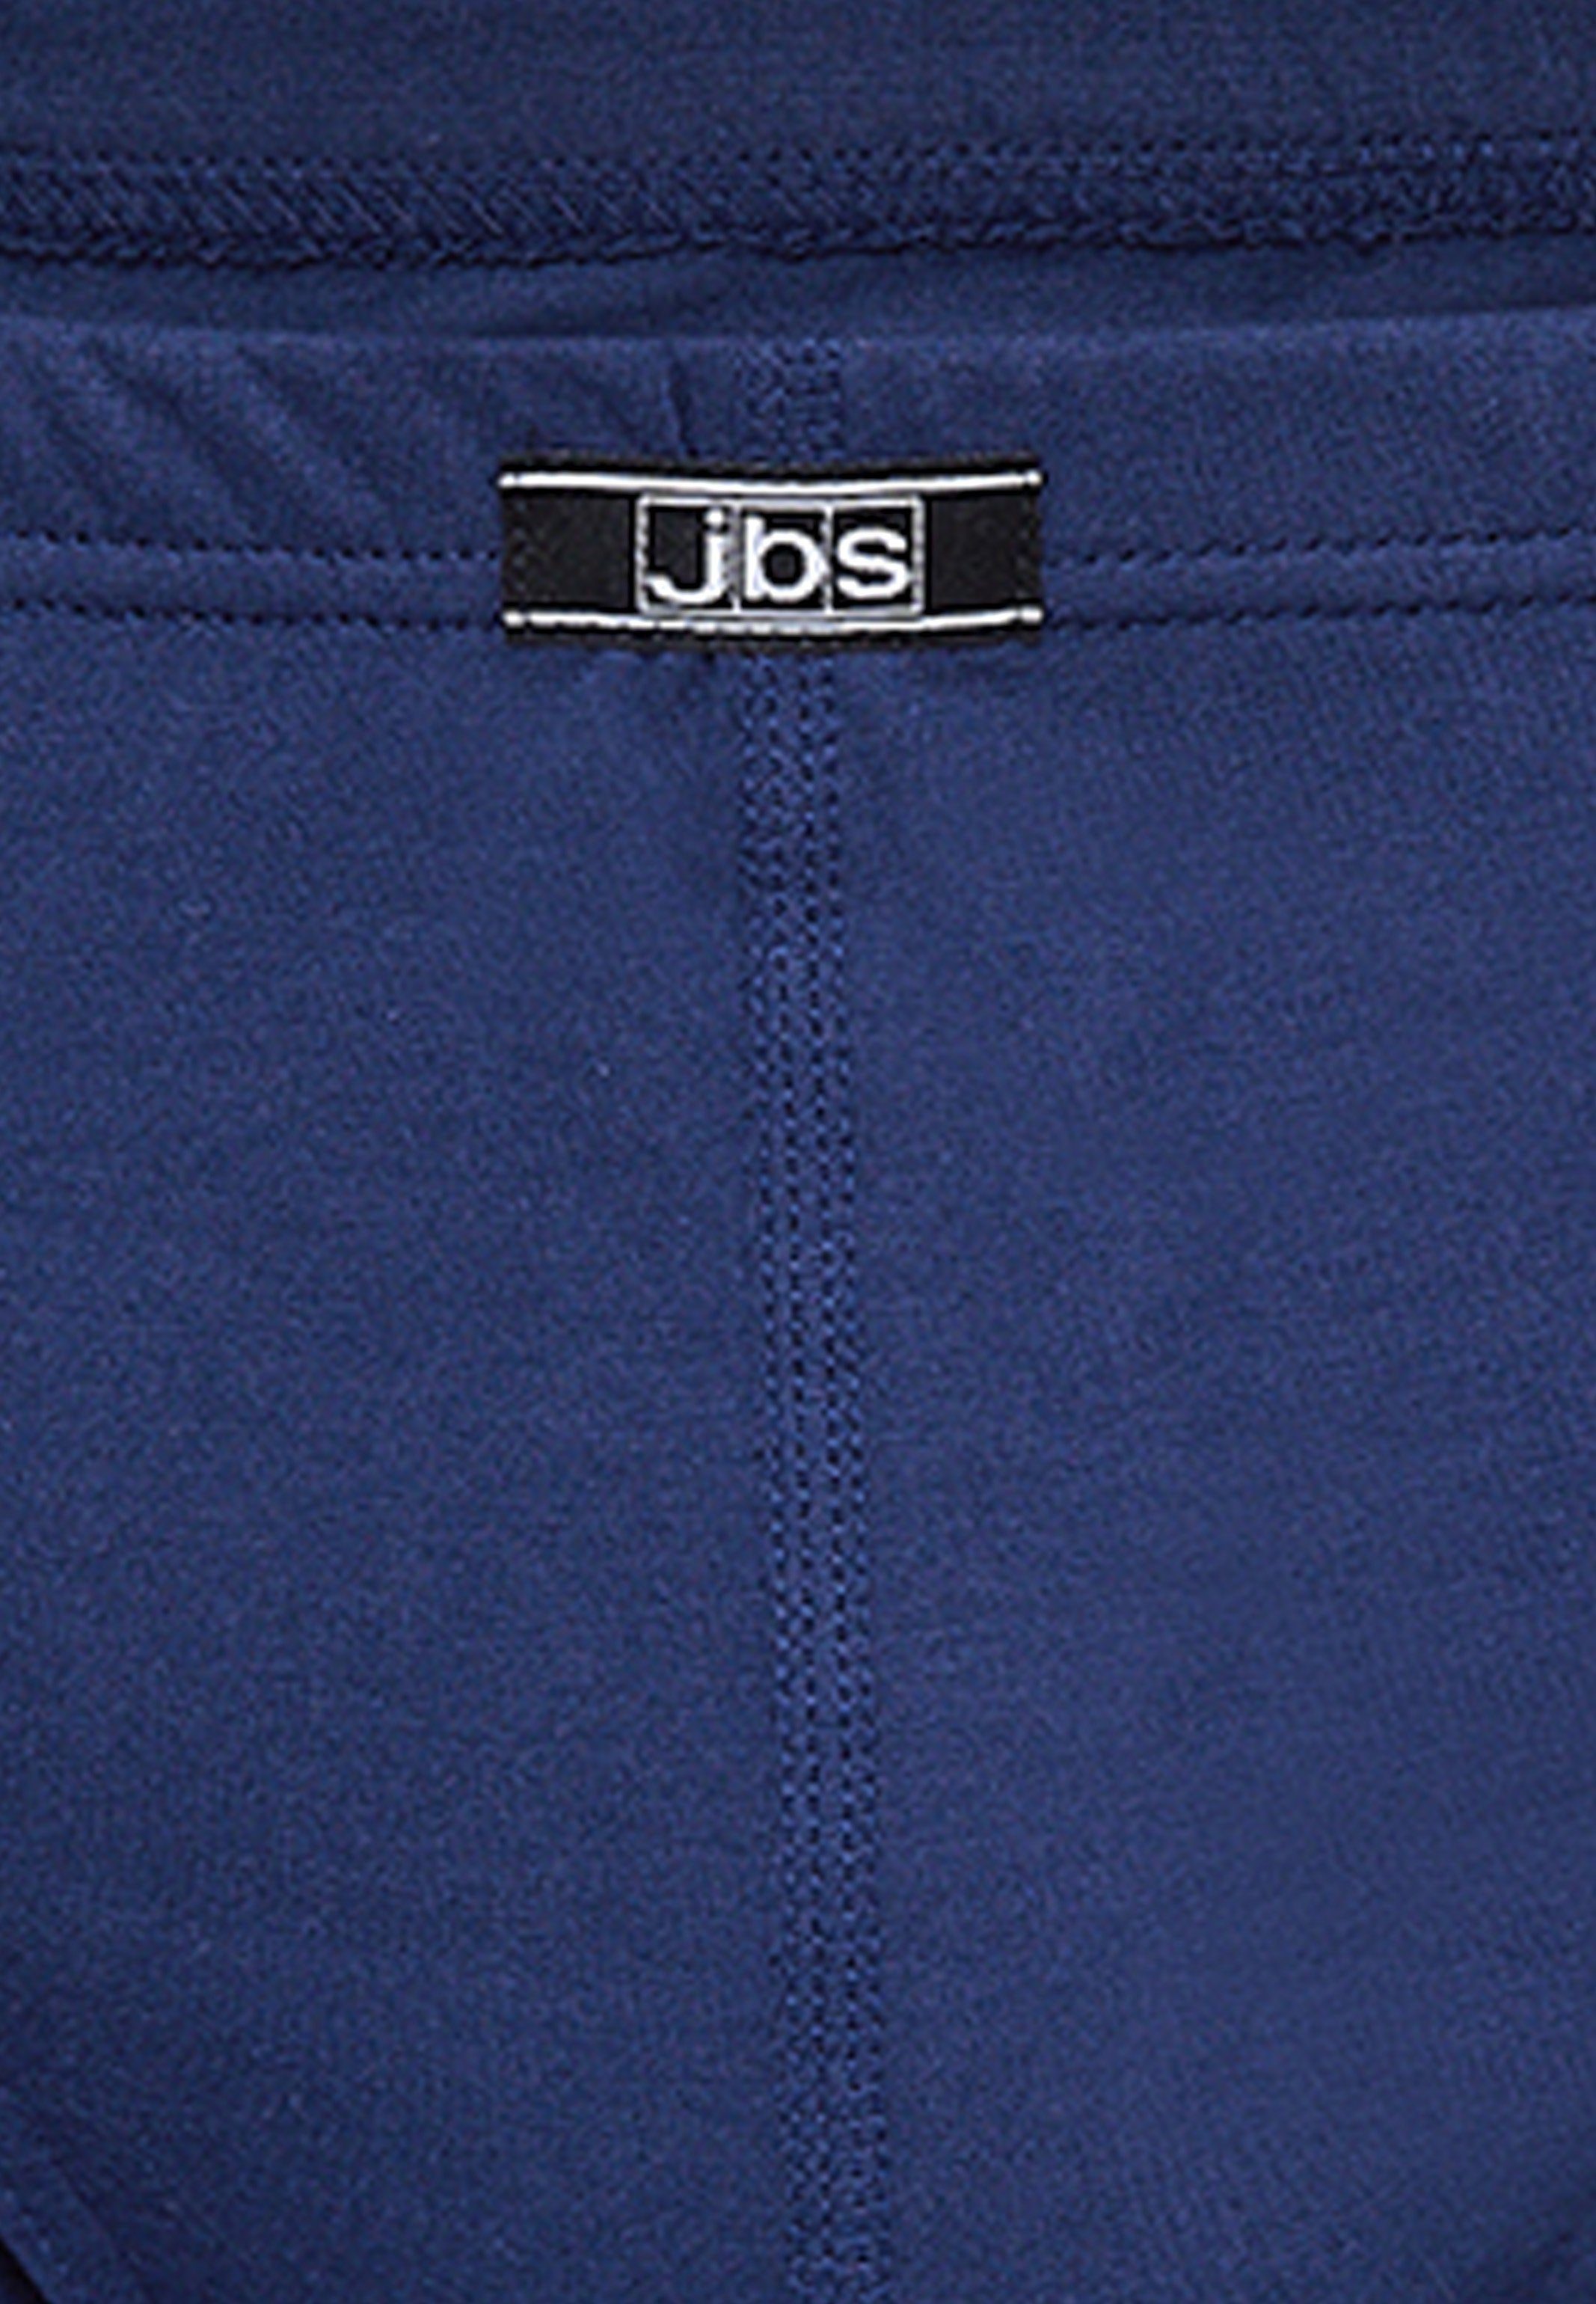 Mini jbs Pack - 10er Marine Ohne Slip Slip Unterhose 10-St) - Organic Cotton / Atmungsaktiv - (Spar-Set, Eingriff Baumwolle